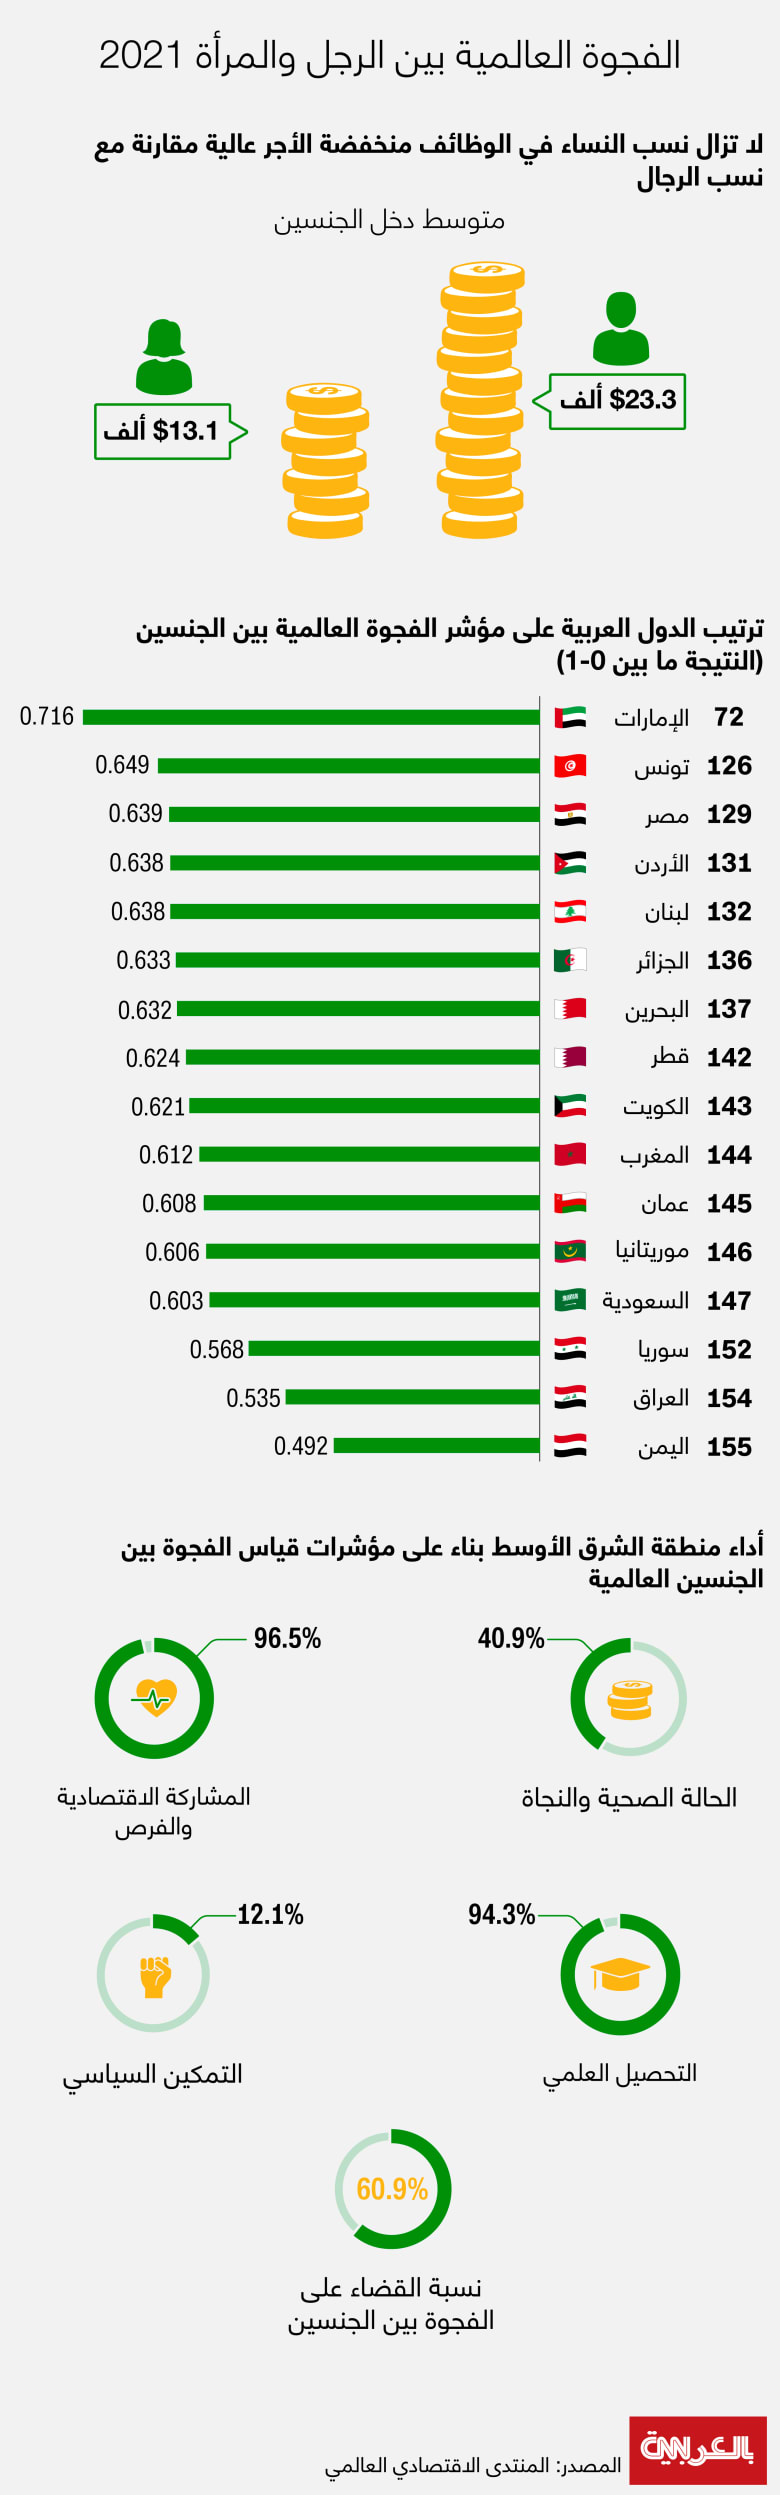 تصنيف تطبيقات الحب الأكثر استخدامًا في دول الخليج - تطبيق مسلم